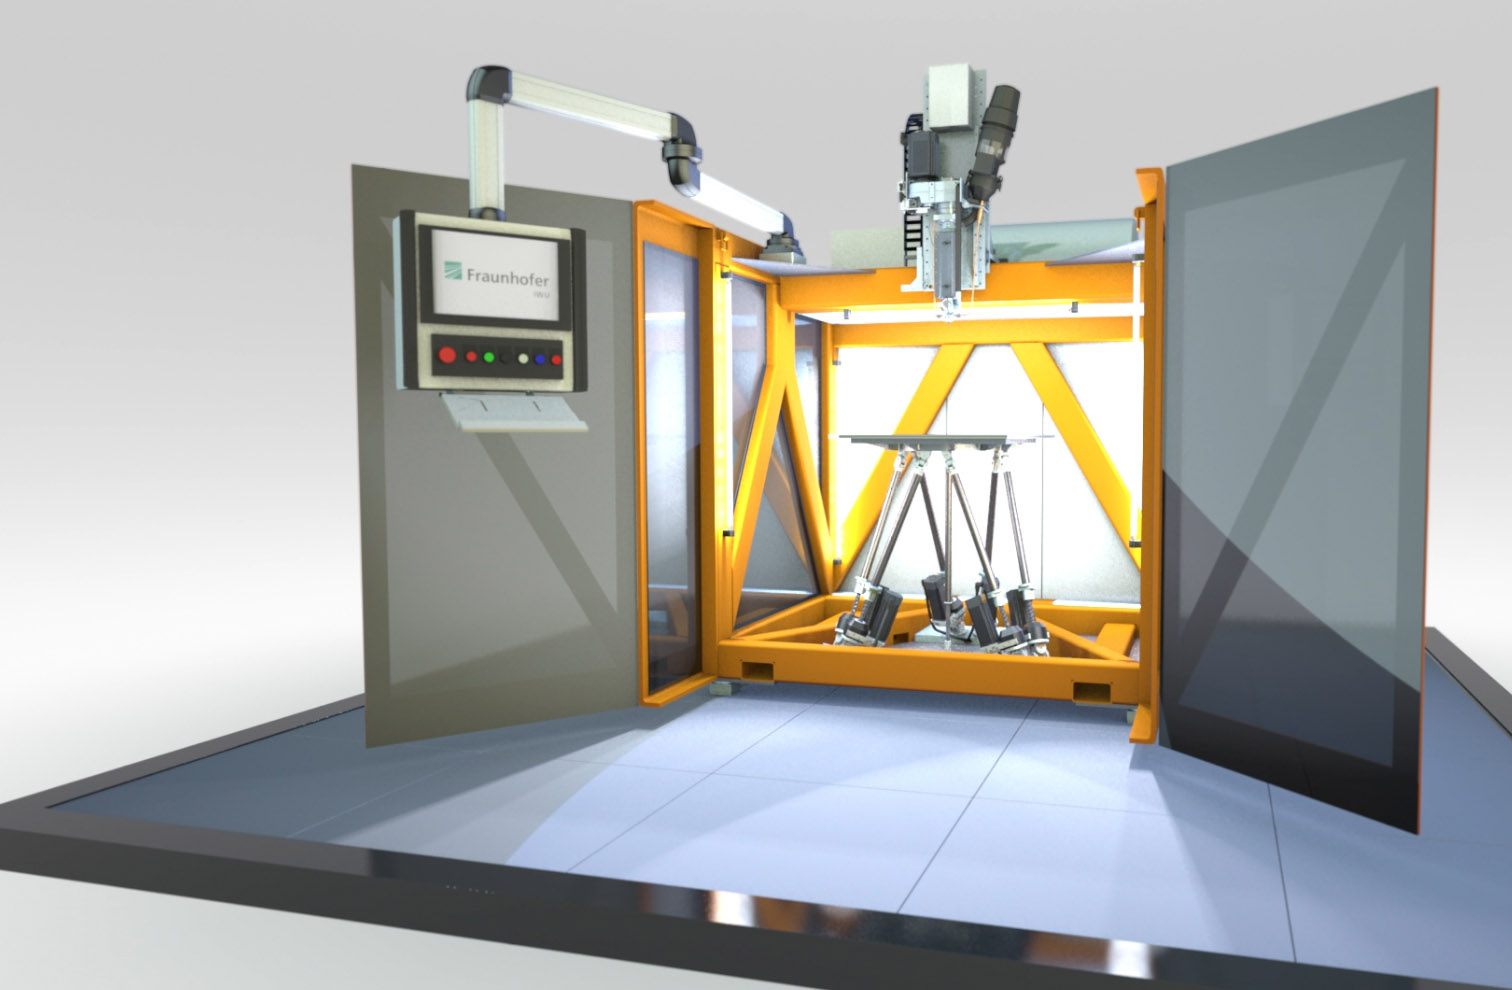 Mit SEAM lässt sich die Additive Fertigung von Kunststoffbauteilen im Vergleich zu herkömmlichen Verfahren um das Achtfache beschleunigen. Diese ultraschnelle Fertigungsgeschwindigkeit erreicht das Verfahren durch die Kombination von 3D-Druck mit dem Bewegungssystem einer Werkzeugmaschine.